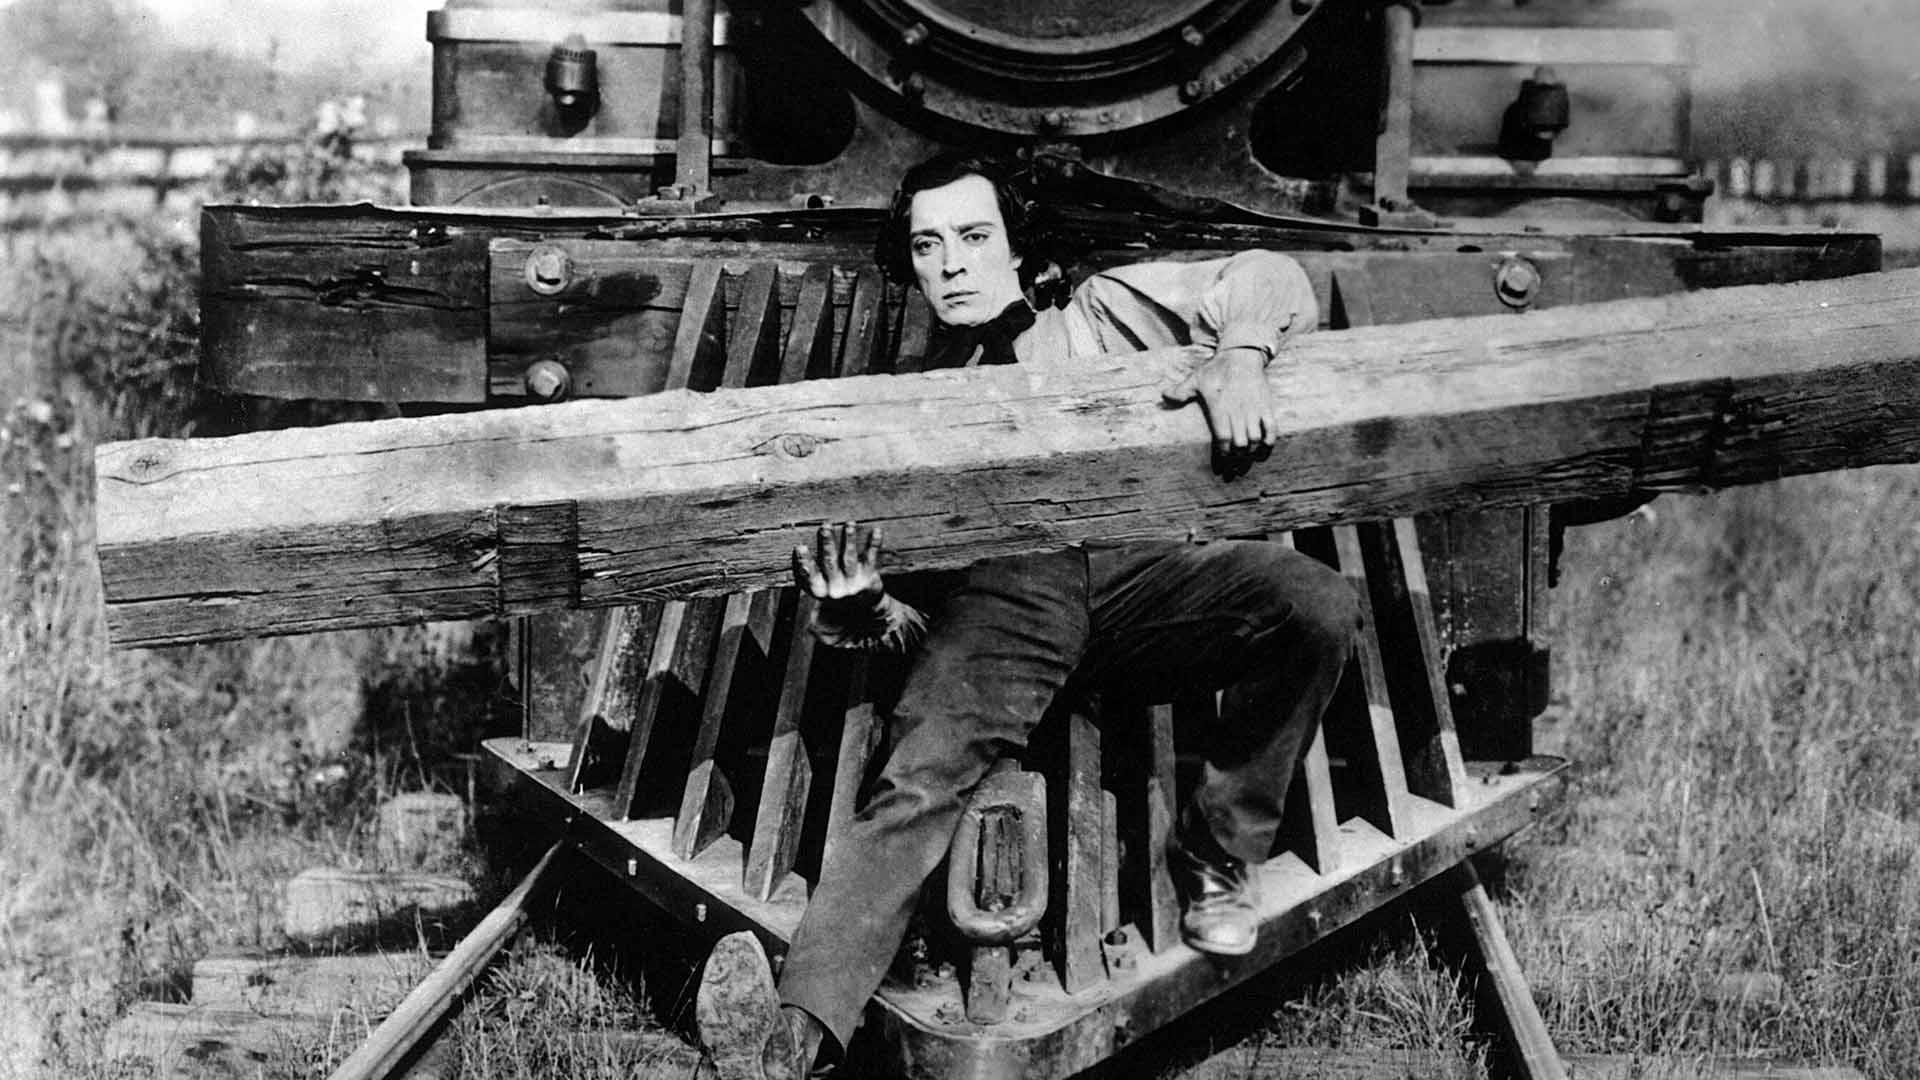 باستر کیتون در فیلم The General به همراه تکه چوبی جلوی قطار افتاده است